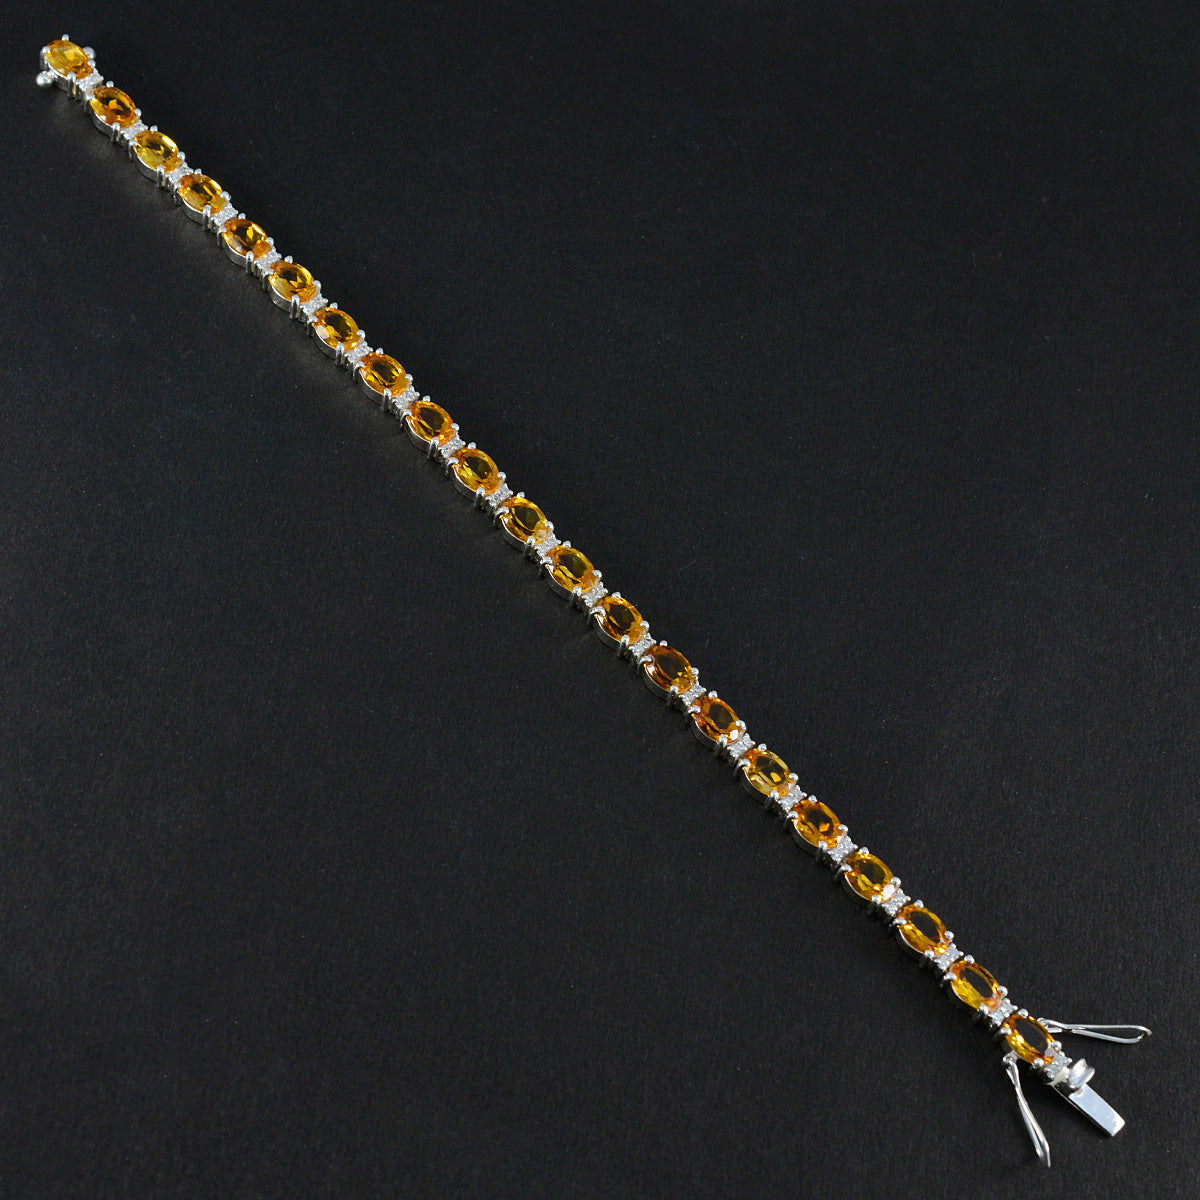 riyo anpassat 925 sterling silver armband för kvinnors citrin armband stift inställning armband med låda med tunga tennis armband l storlek 6-8,5 tum.